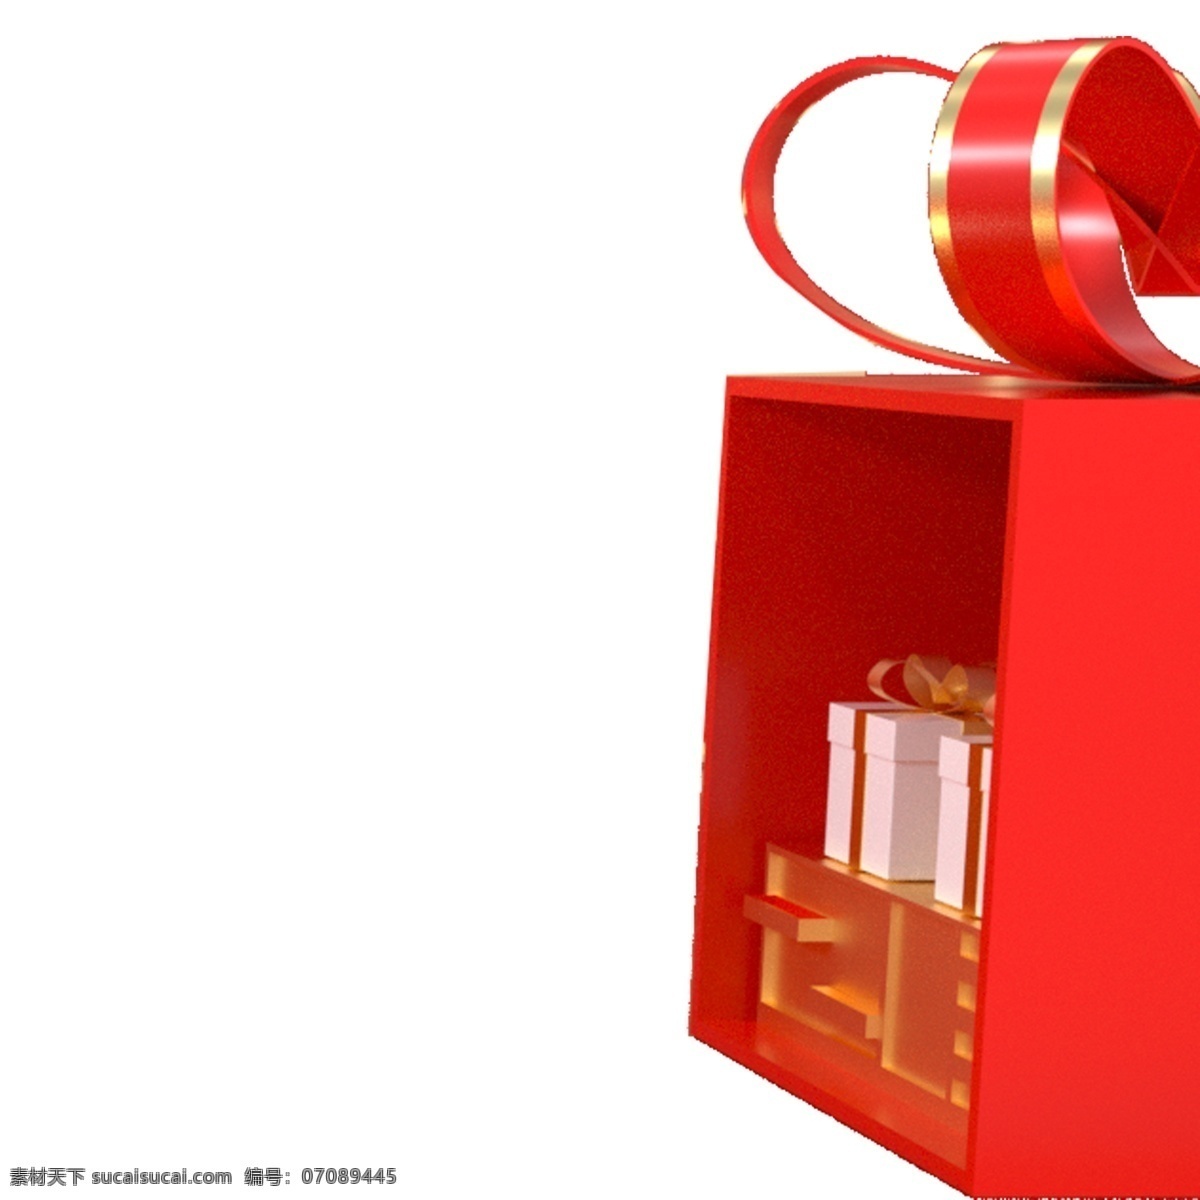 红色 立体 礼盒 免 抠 图 包装礼盒 红色丝带 卡通图案 卡通插画 时尚插画 礼物包装 红色立体礼盒 免抠图